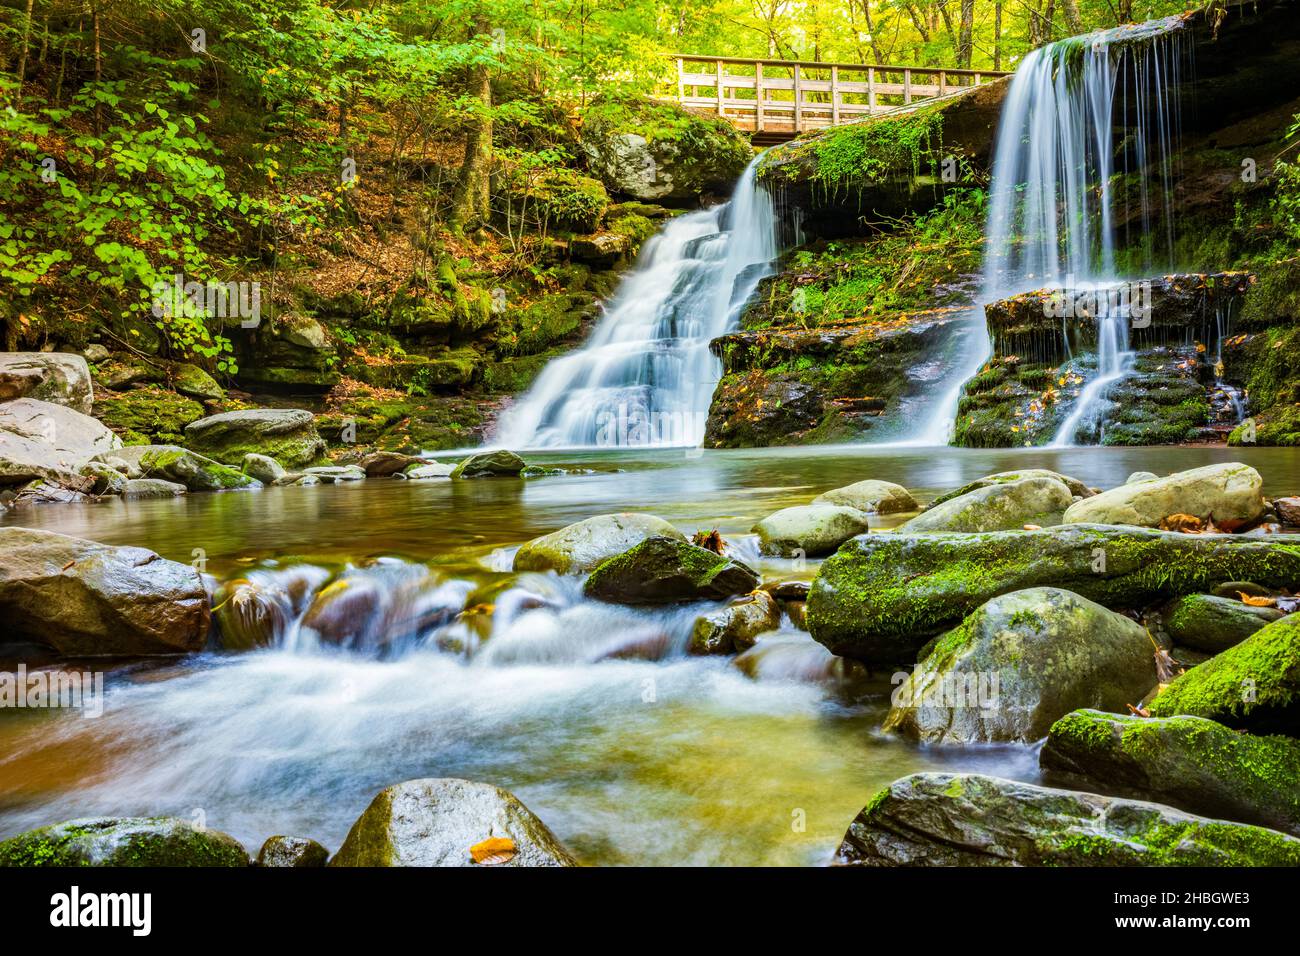 Les eaux floues de Diamond Notch Falls sur l'Ouest tuez le long de Devil's Path dans les montagnes Catskill de New York, est un site accueillant pour le salut Banque D'Images